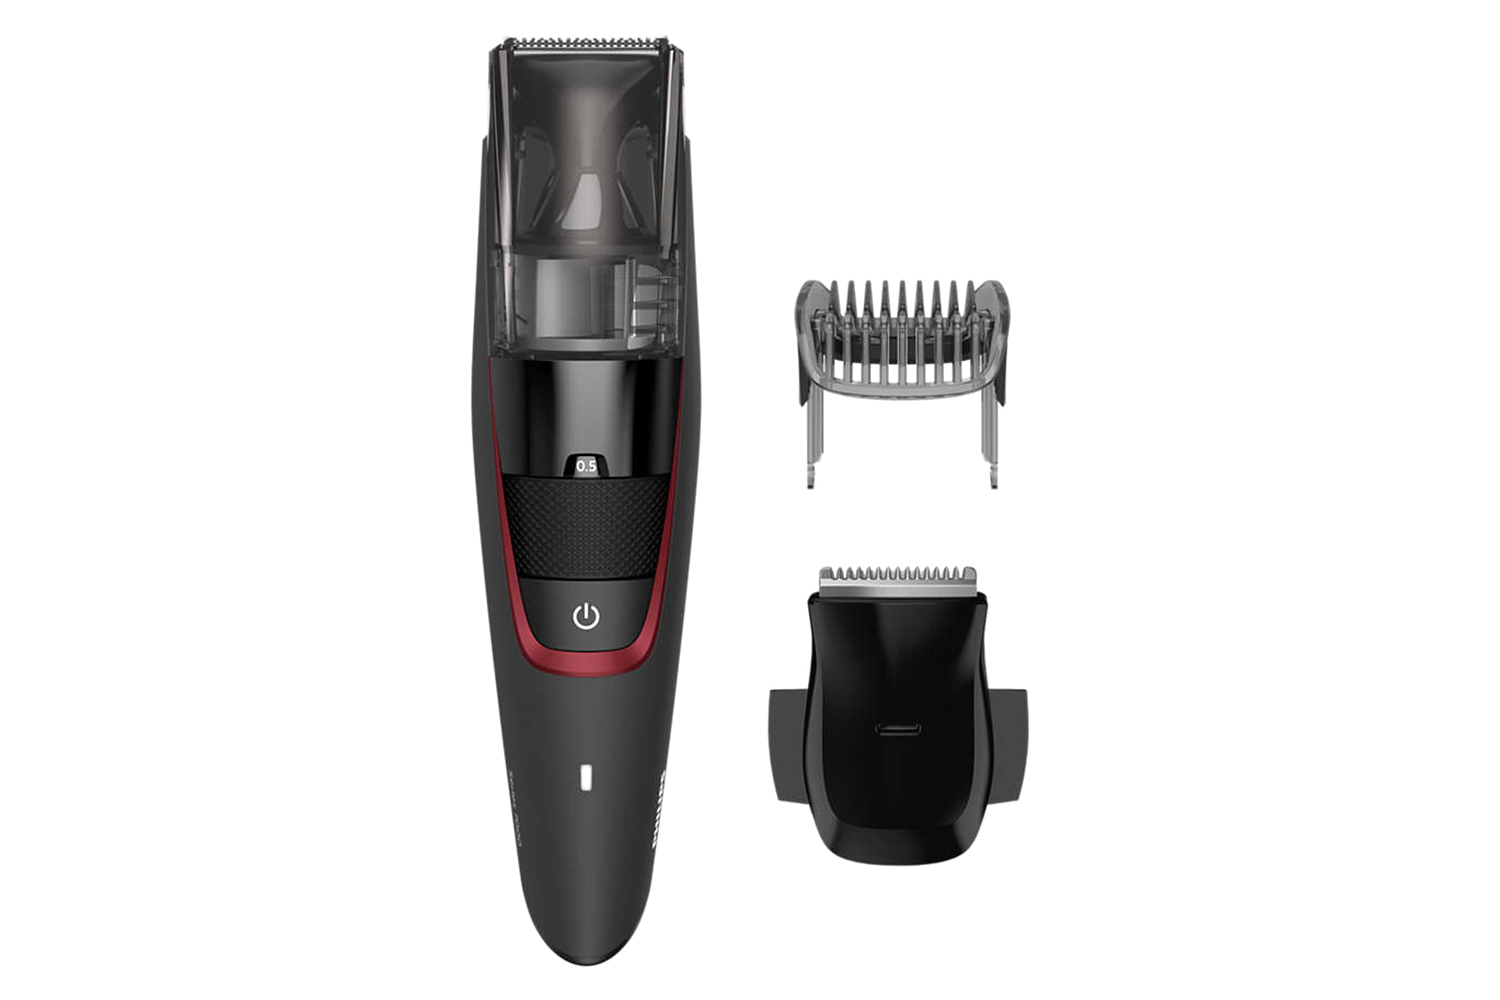 philips vacuum beard trimmer